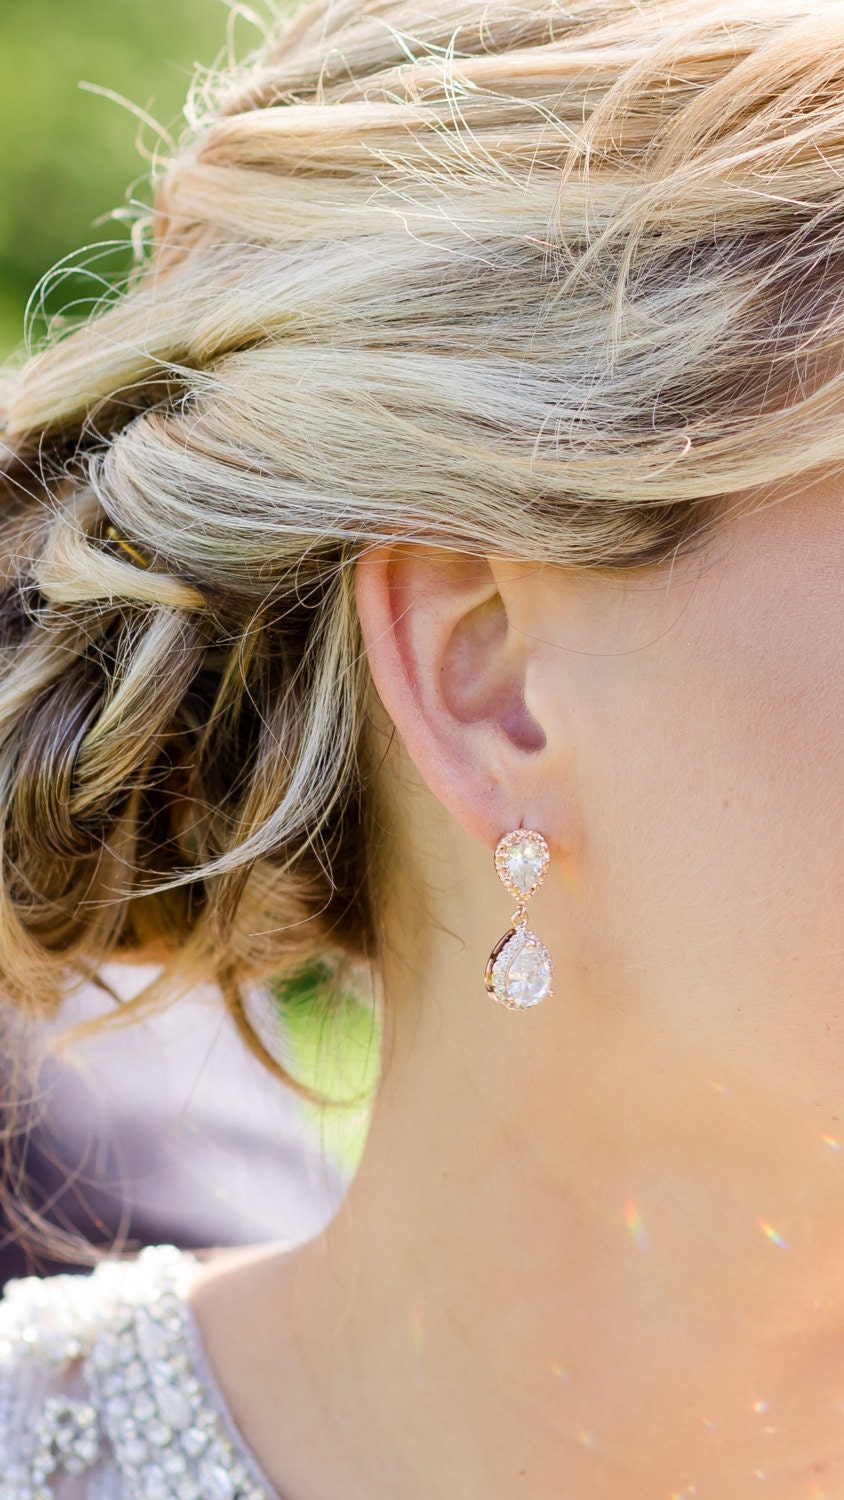 special 19.99 SILVER pendant earrings , stud earrings for brides,  wedding jewelry,  dangle earrings, white gold filled stud earrings